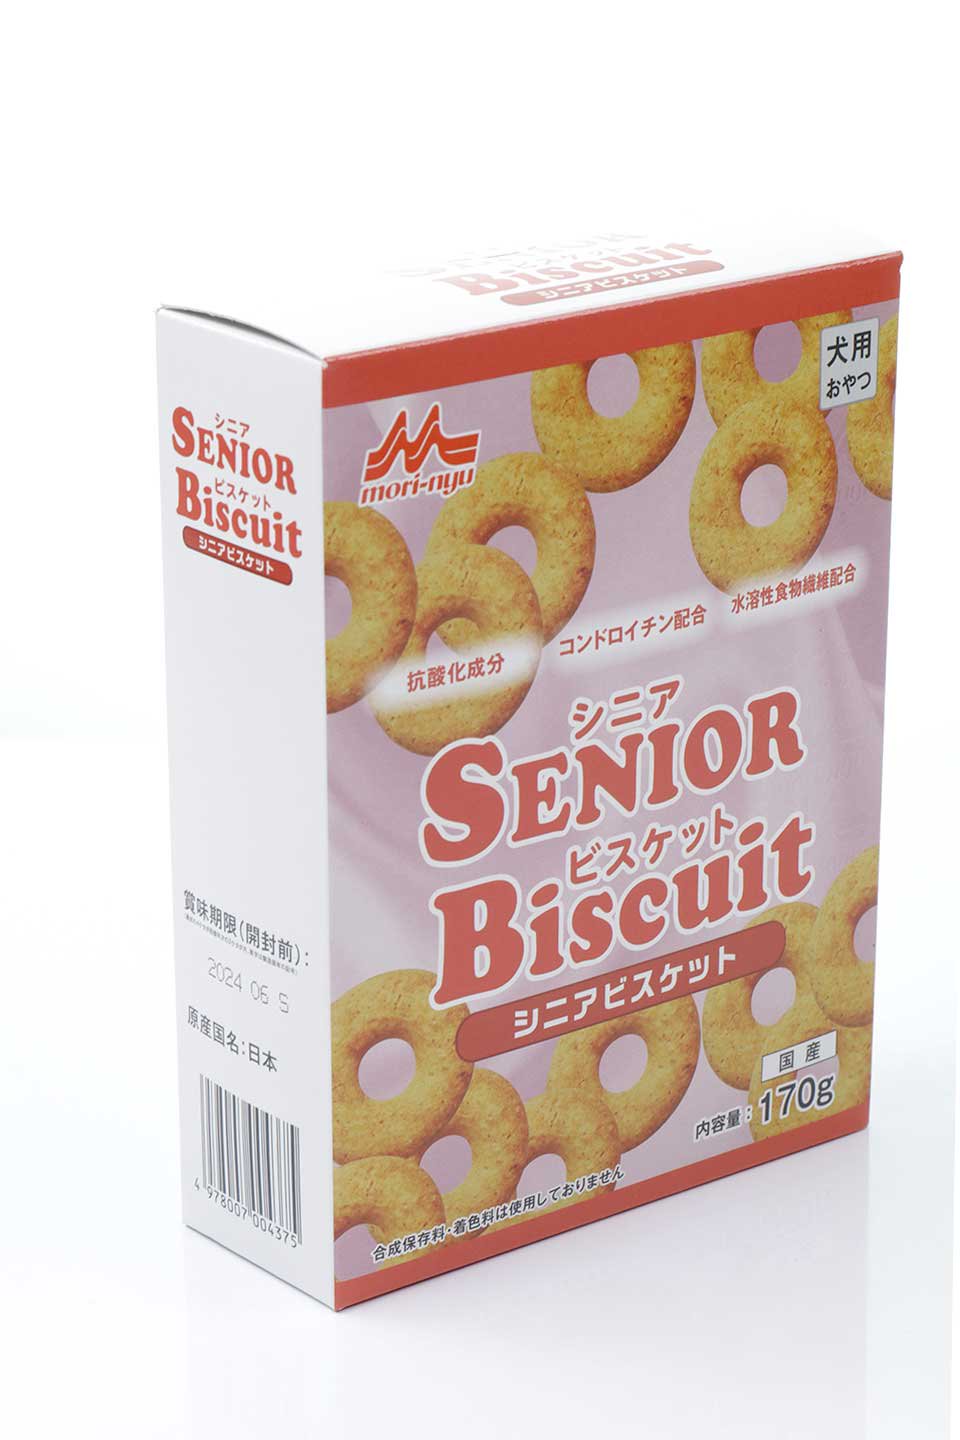 Senior Biscuit シニアビスケット